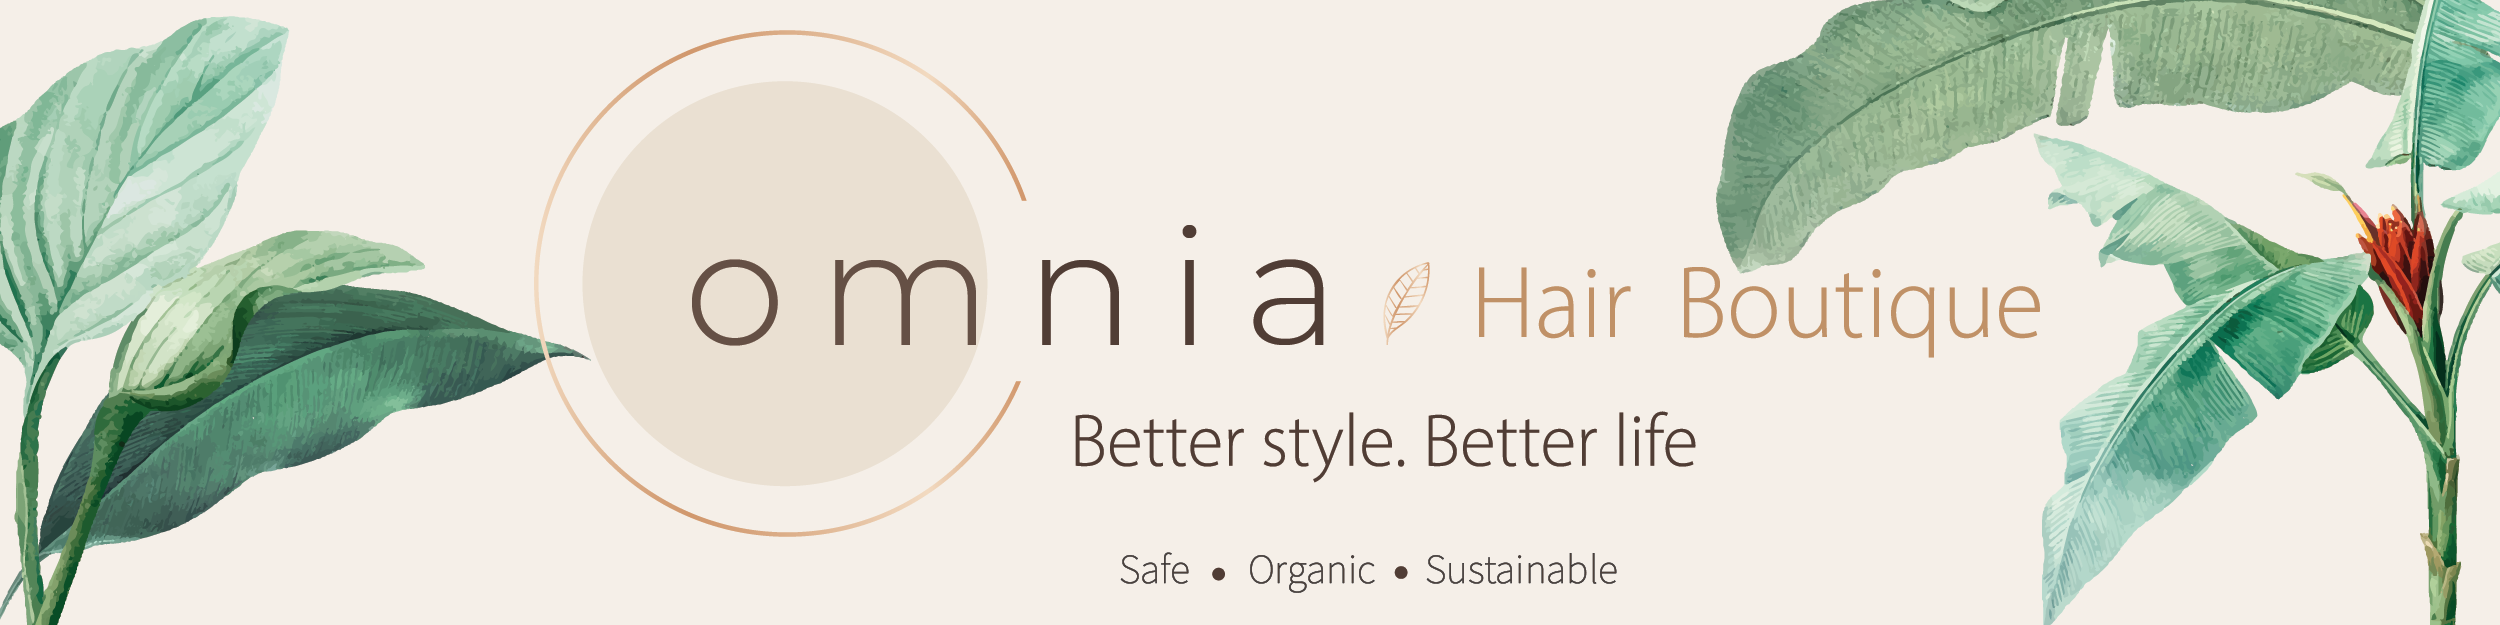 Omnia Hair Boutique –  Salon tóc organic tại Hà Nội